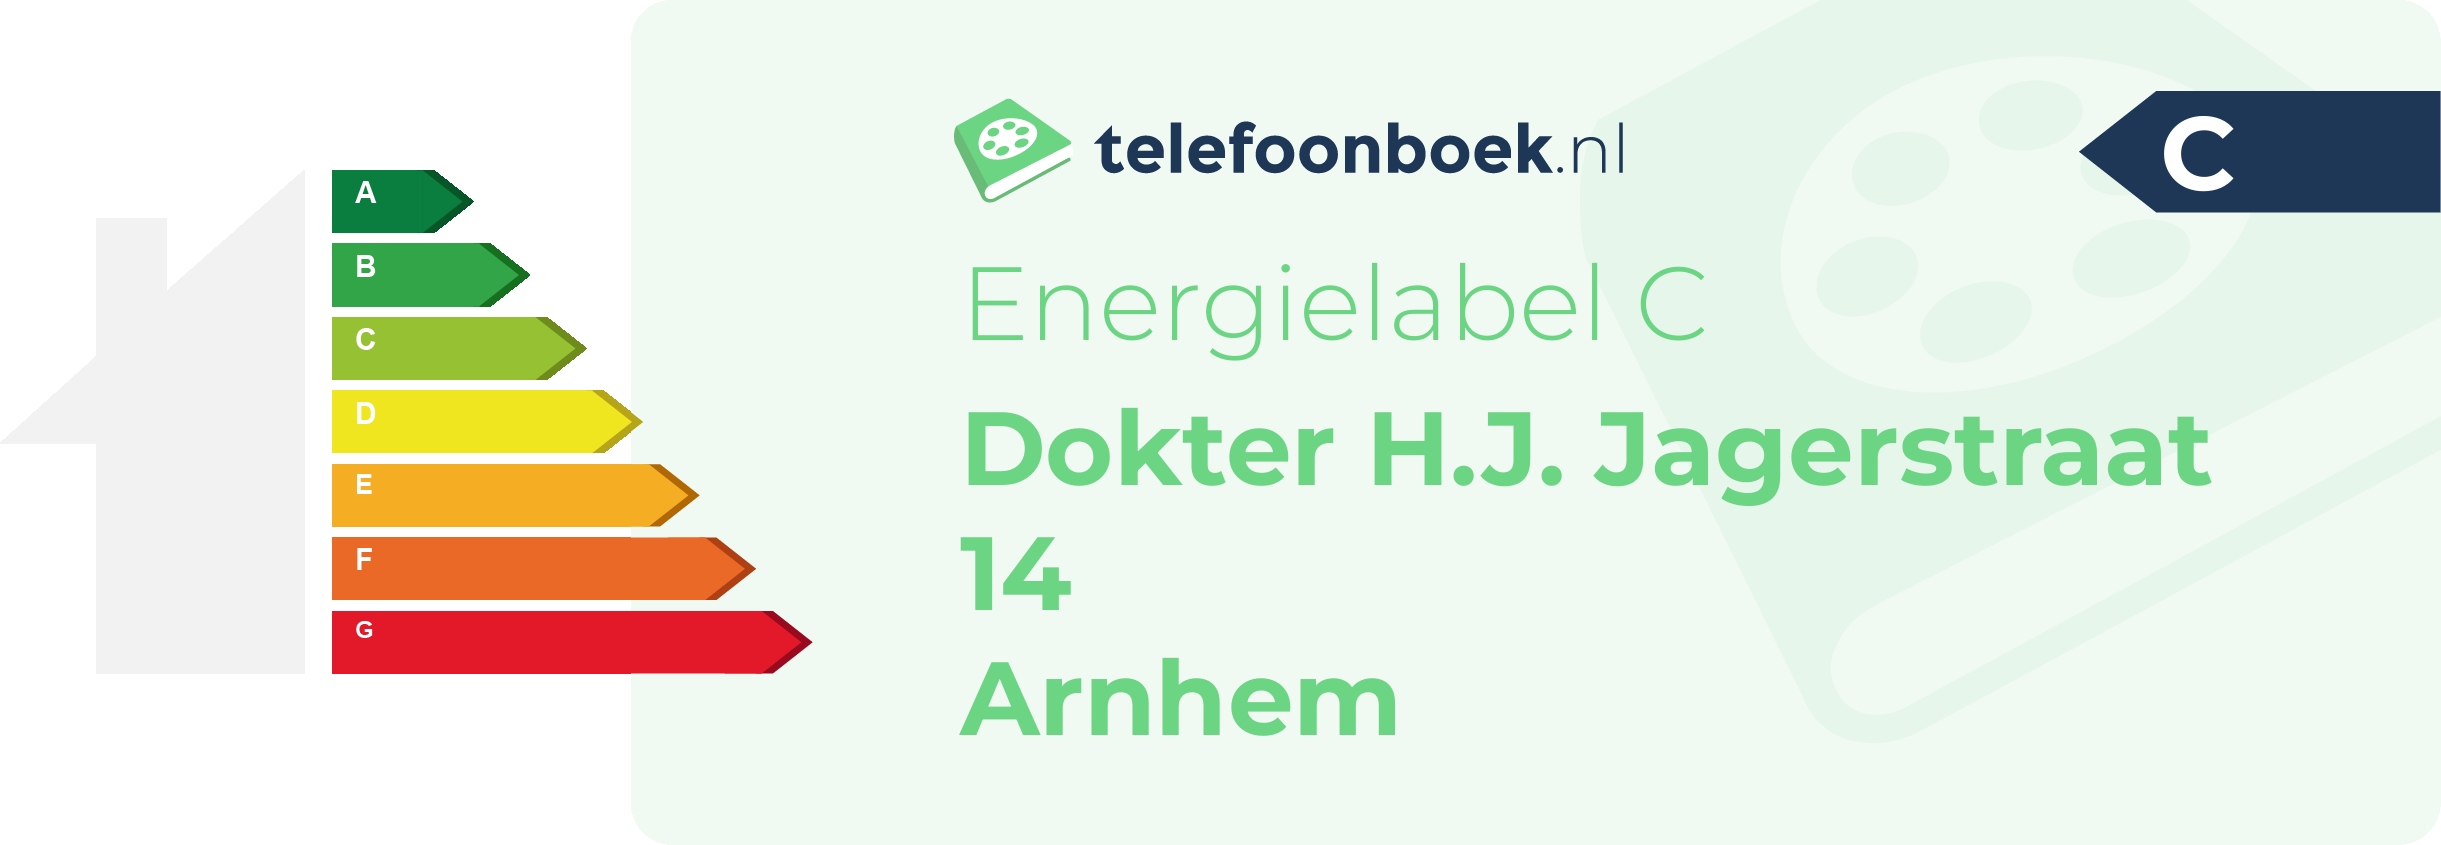 Energielabel Dokter H.J. Jagerstraat 14 Arnhem